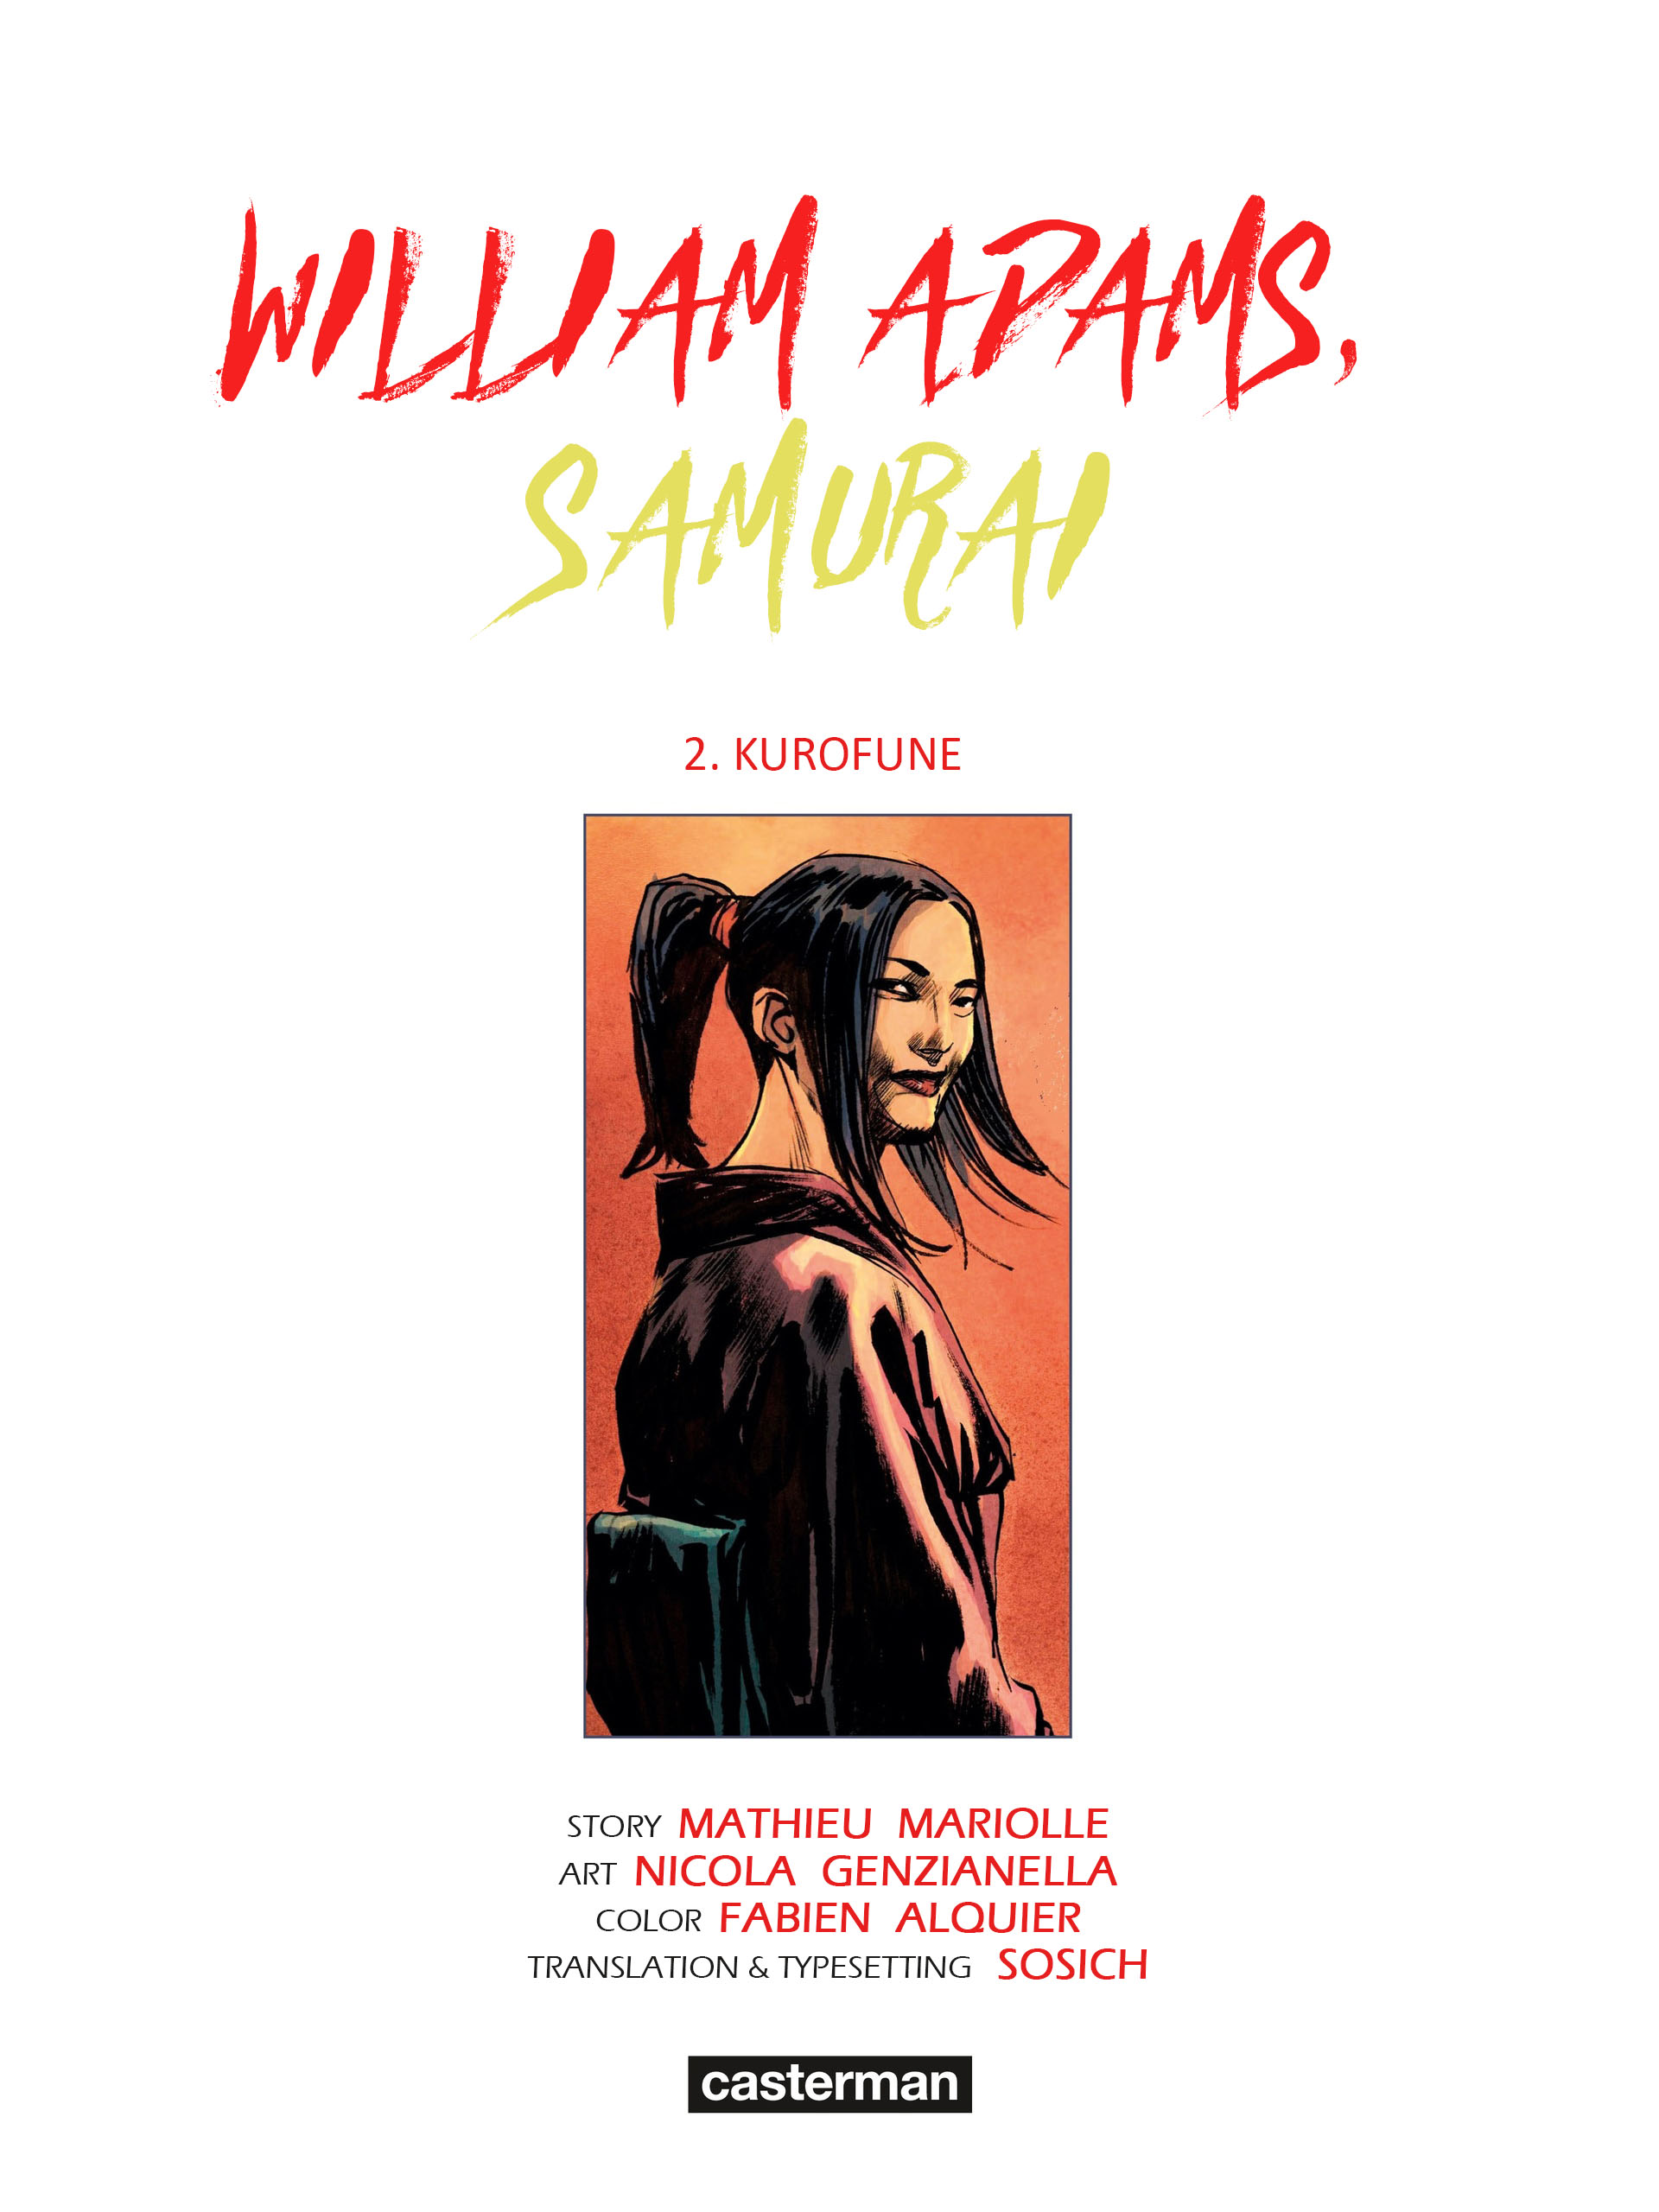 Read online William Adams, Samuraj comic -  Issue #2 - 2